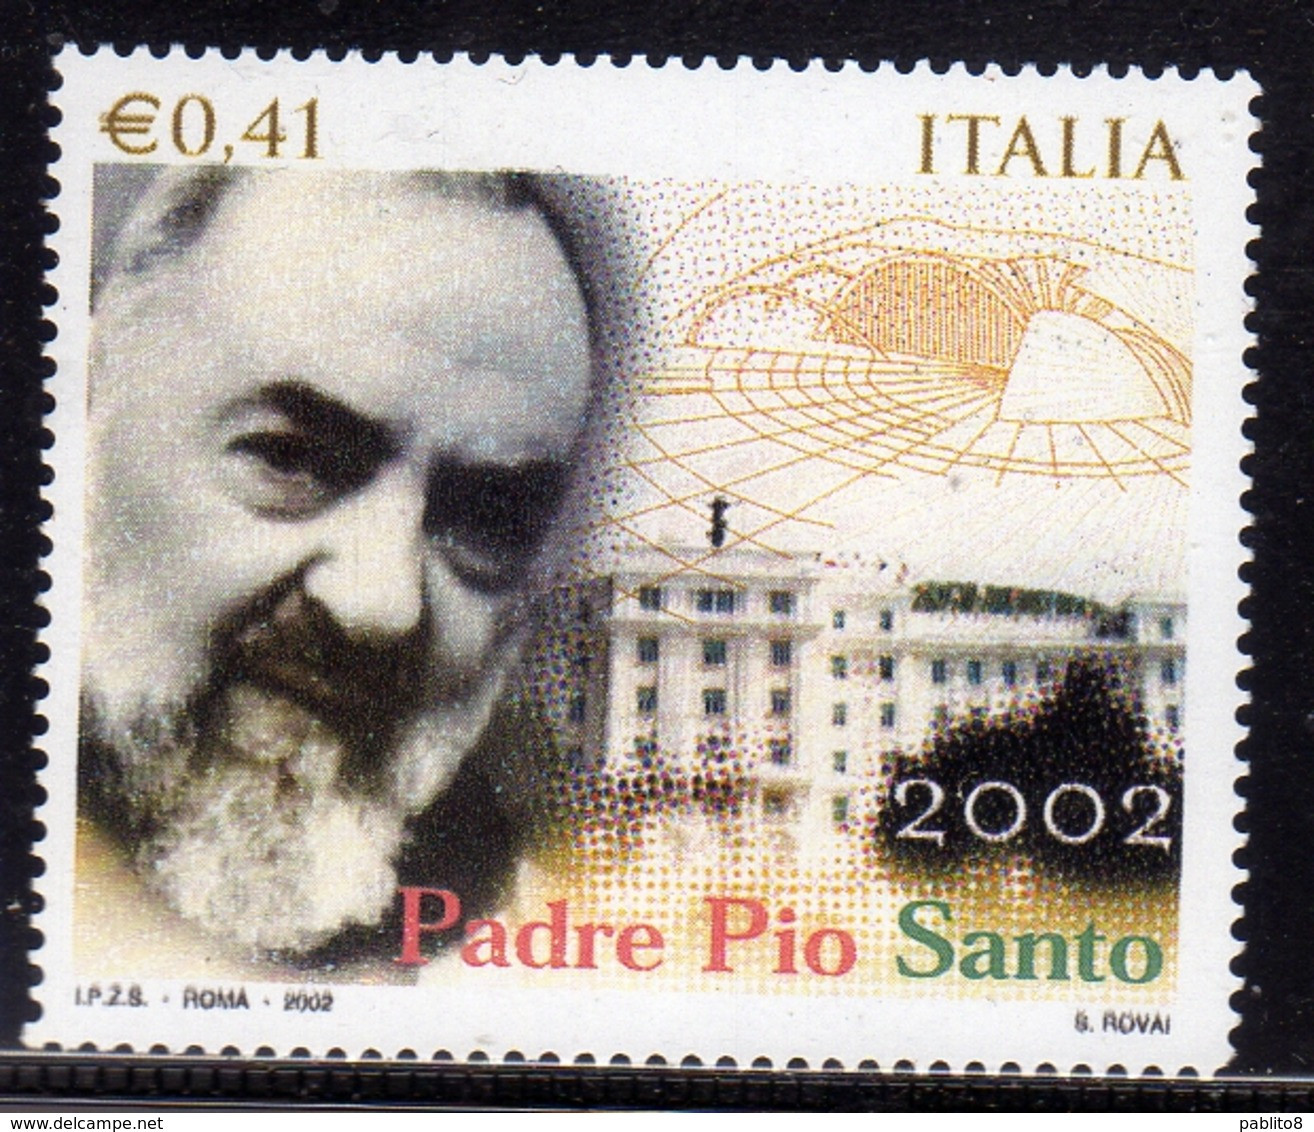 ITALIA REPUBBLICA ITALY REPUBLIC 2002 CANONIZZAZIONE PADRE PIO DA PIETRELCINA SANTO € 0,41 MNH - 2001-10: Mint/hinged